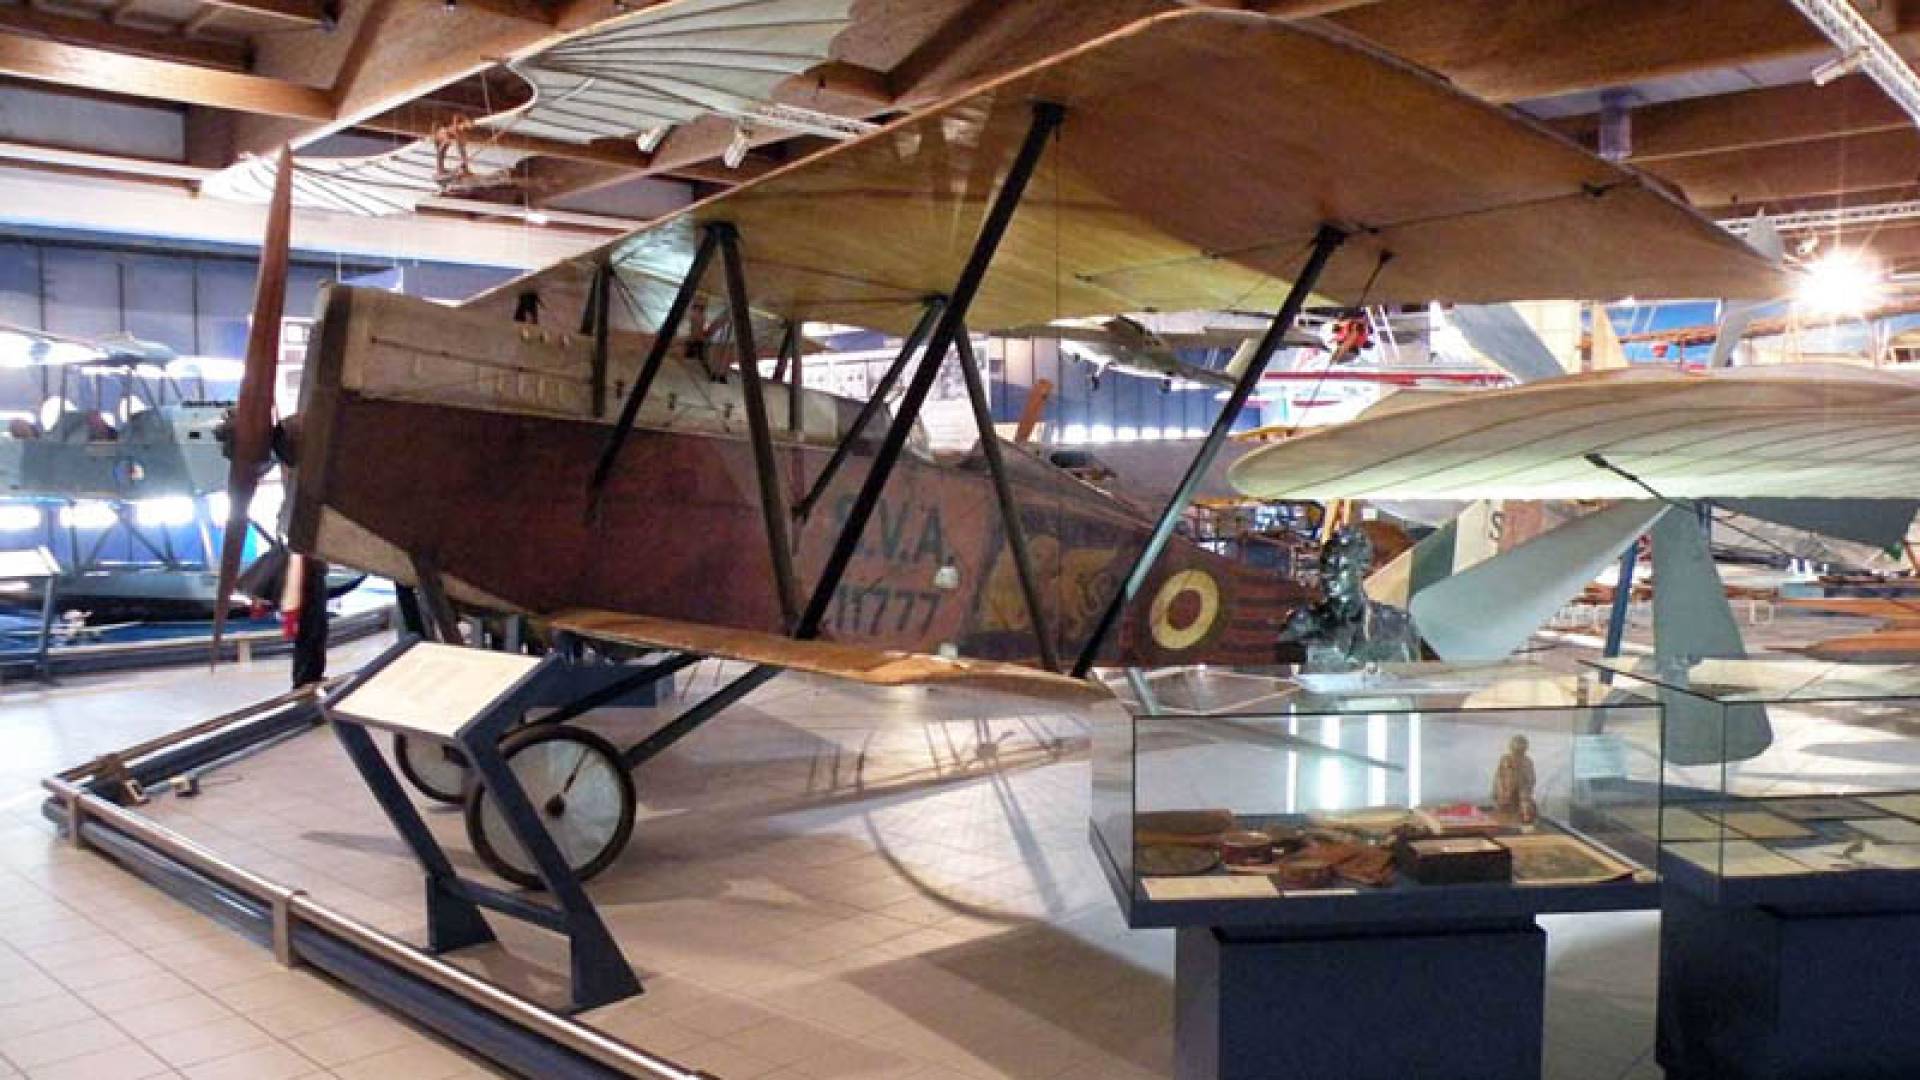 MUSEUM OF AERONAUTICS, Museum Of Aeronautics